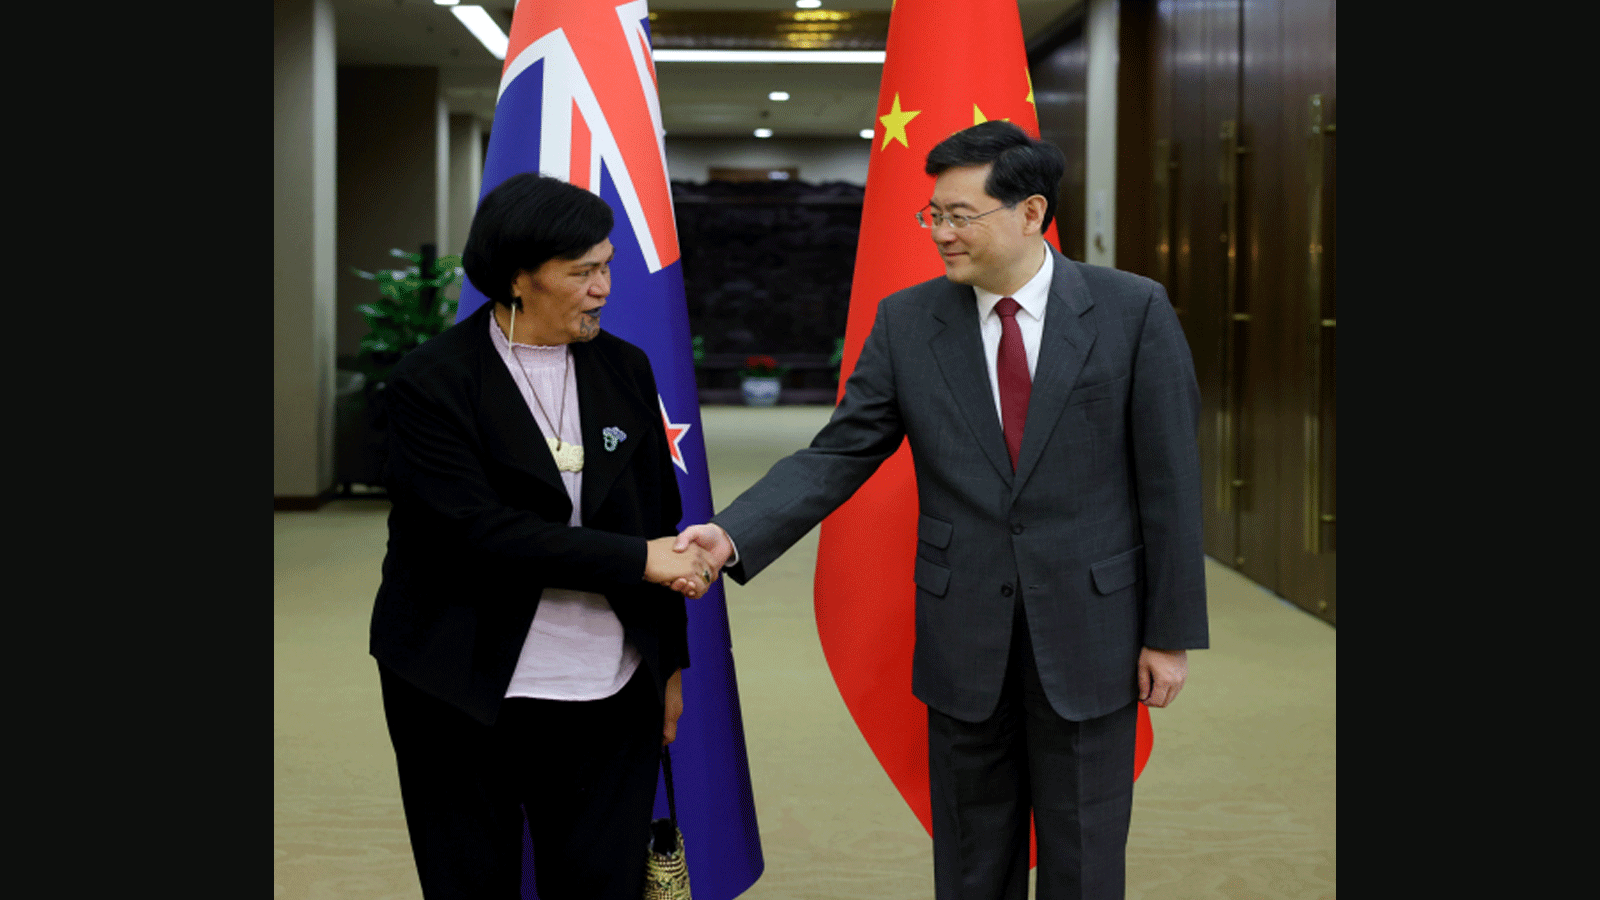 مستشار الدولة ووزير الخارجية الصيني كينغ غانغ بستقبل وزيرة الخارجية النيوزيلندية نانا ماهوتا في بكين(الخارجية الصينية)